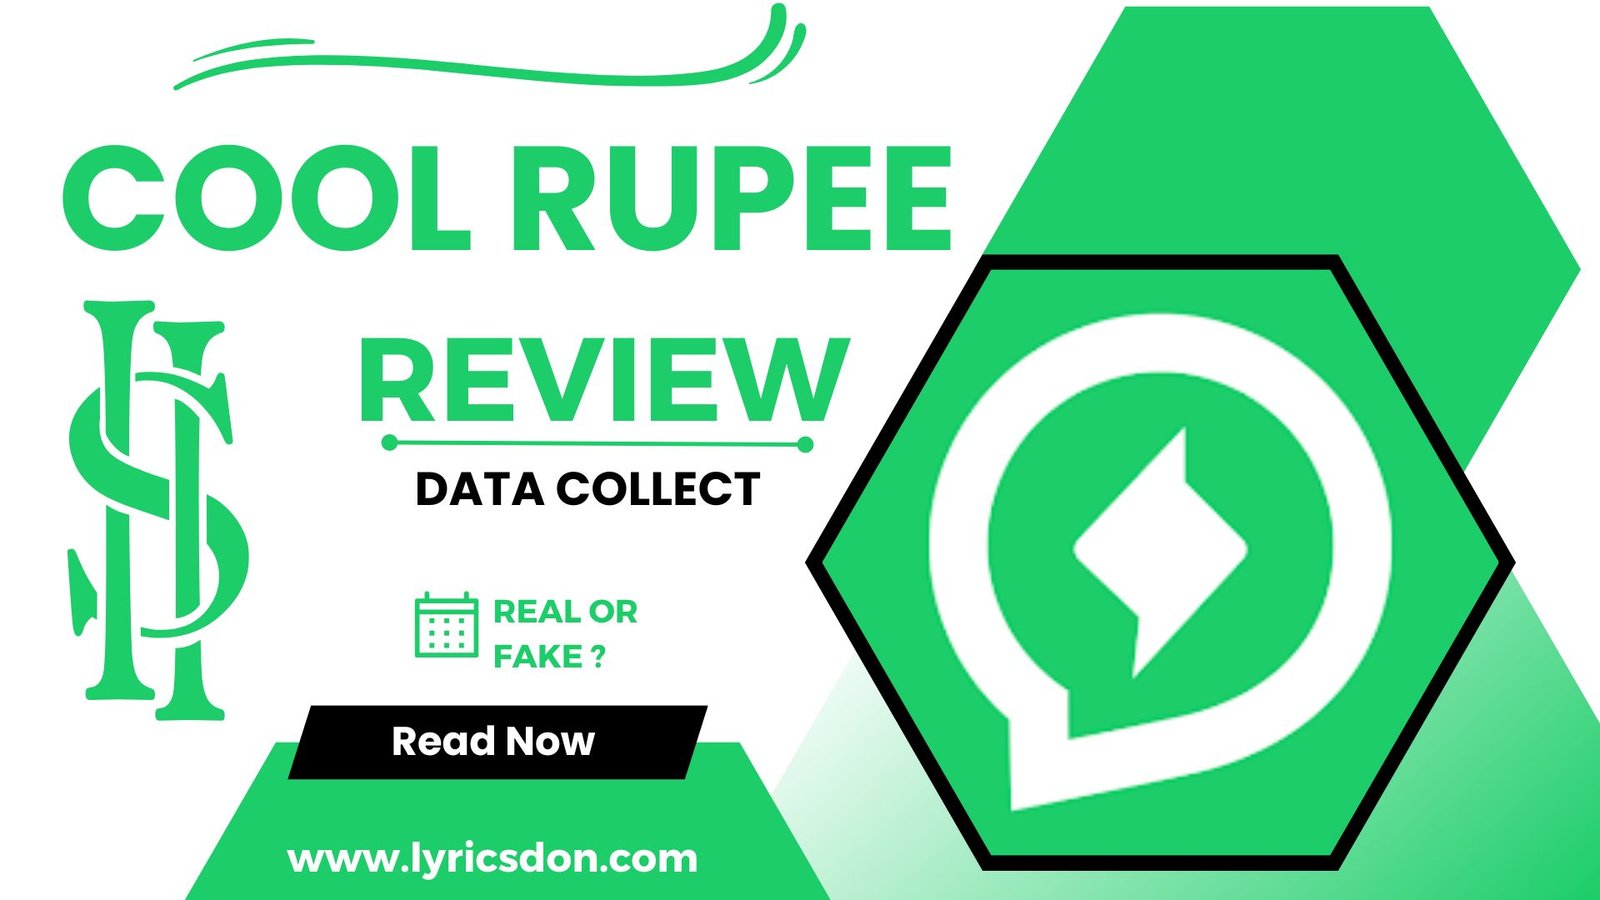 Cool Rupee Loan App Review